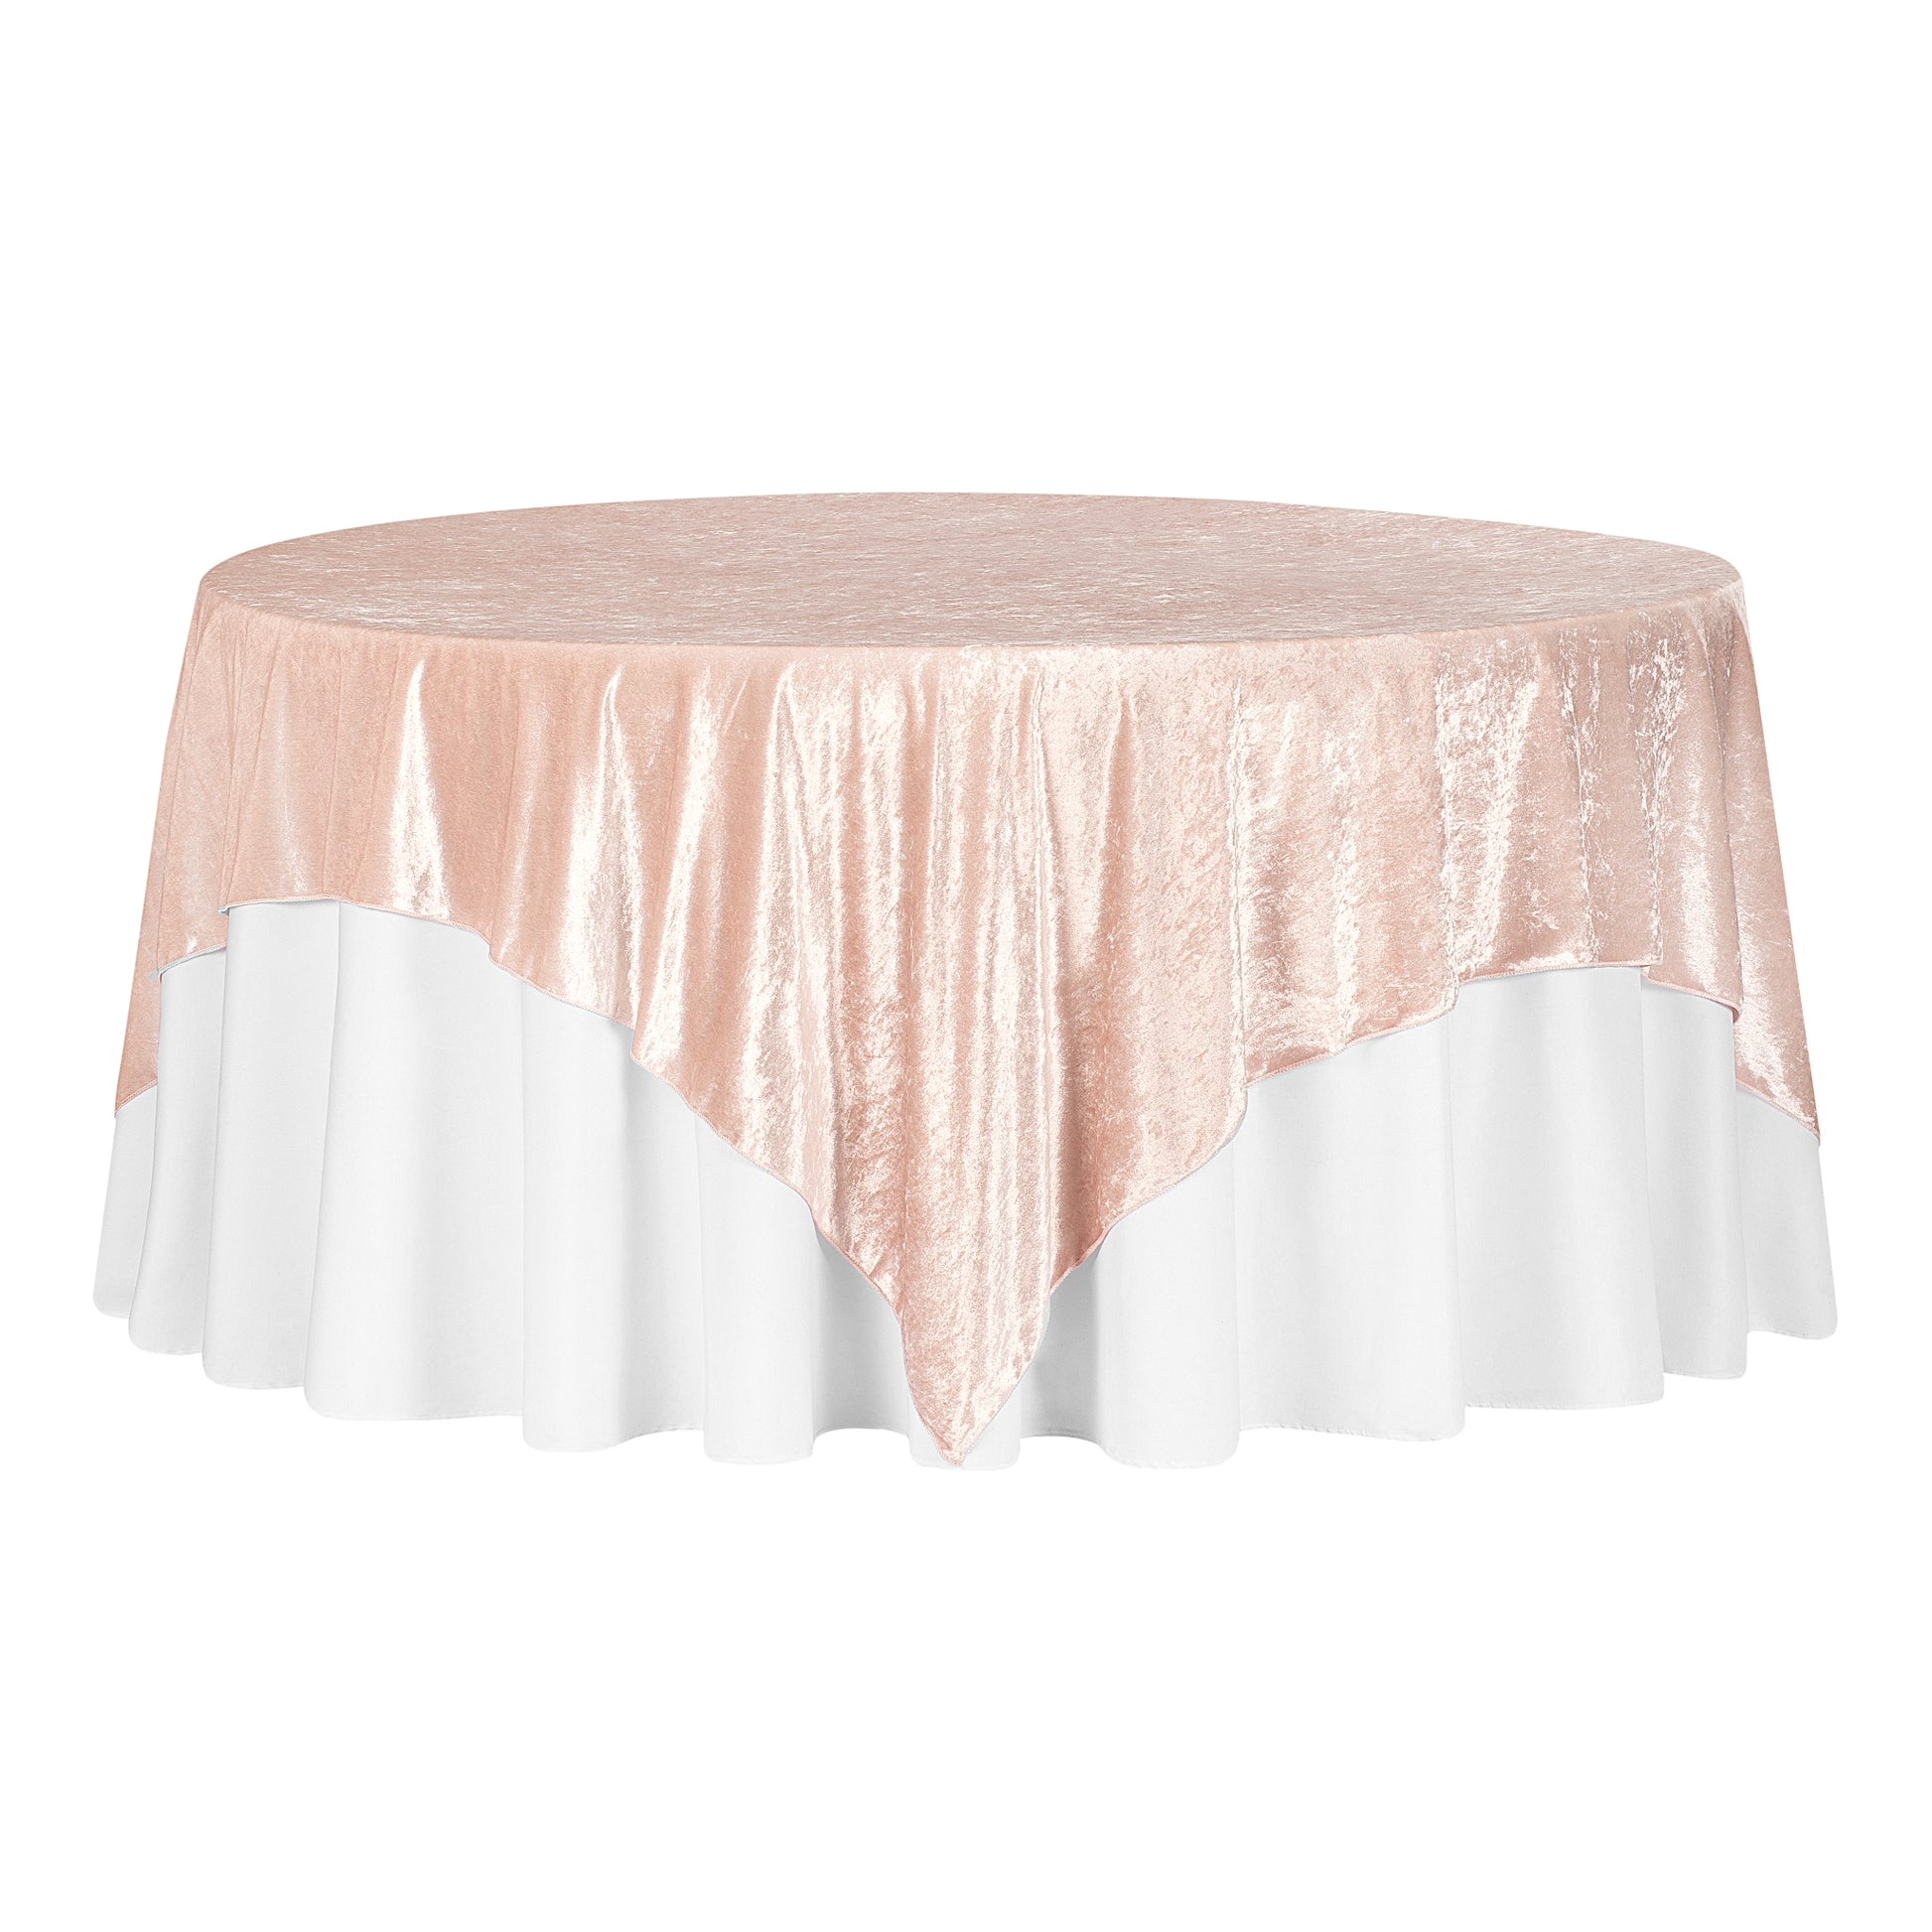 Velvet 85"x85" Square Tablecloth Table Overlay - Blush/Rose Gold - CV Linens